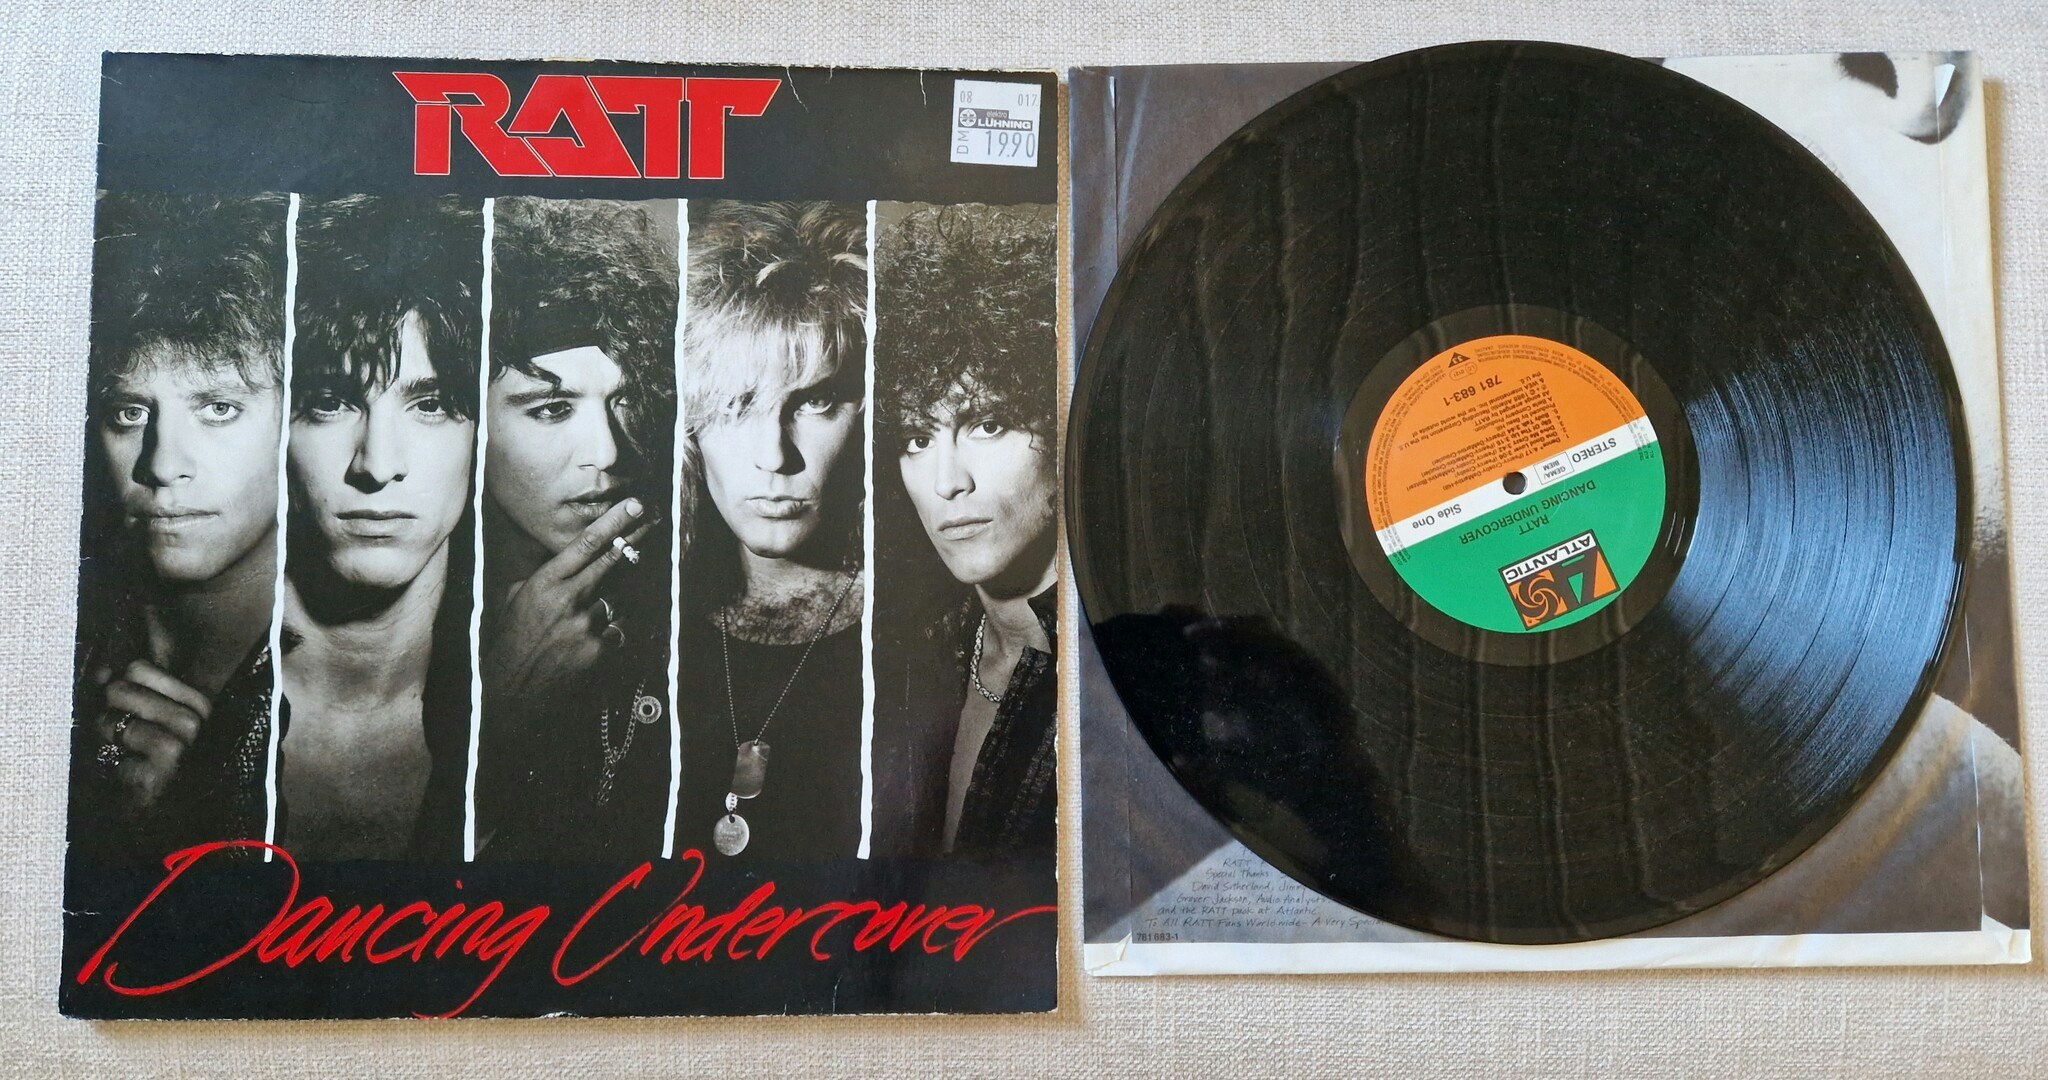 Ratt, Dancing undercover. Vinyl LP